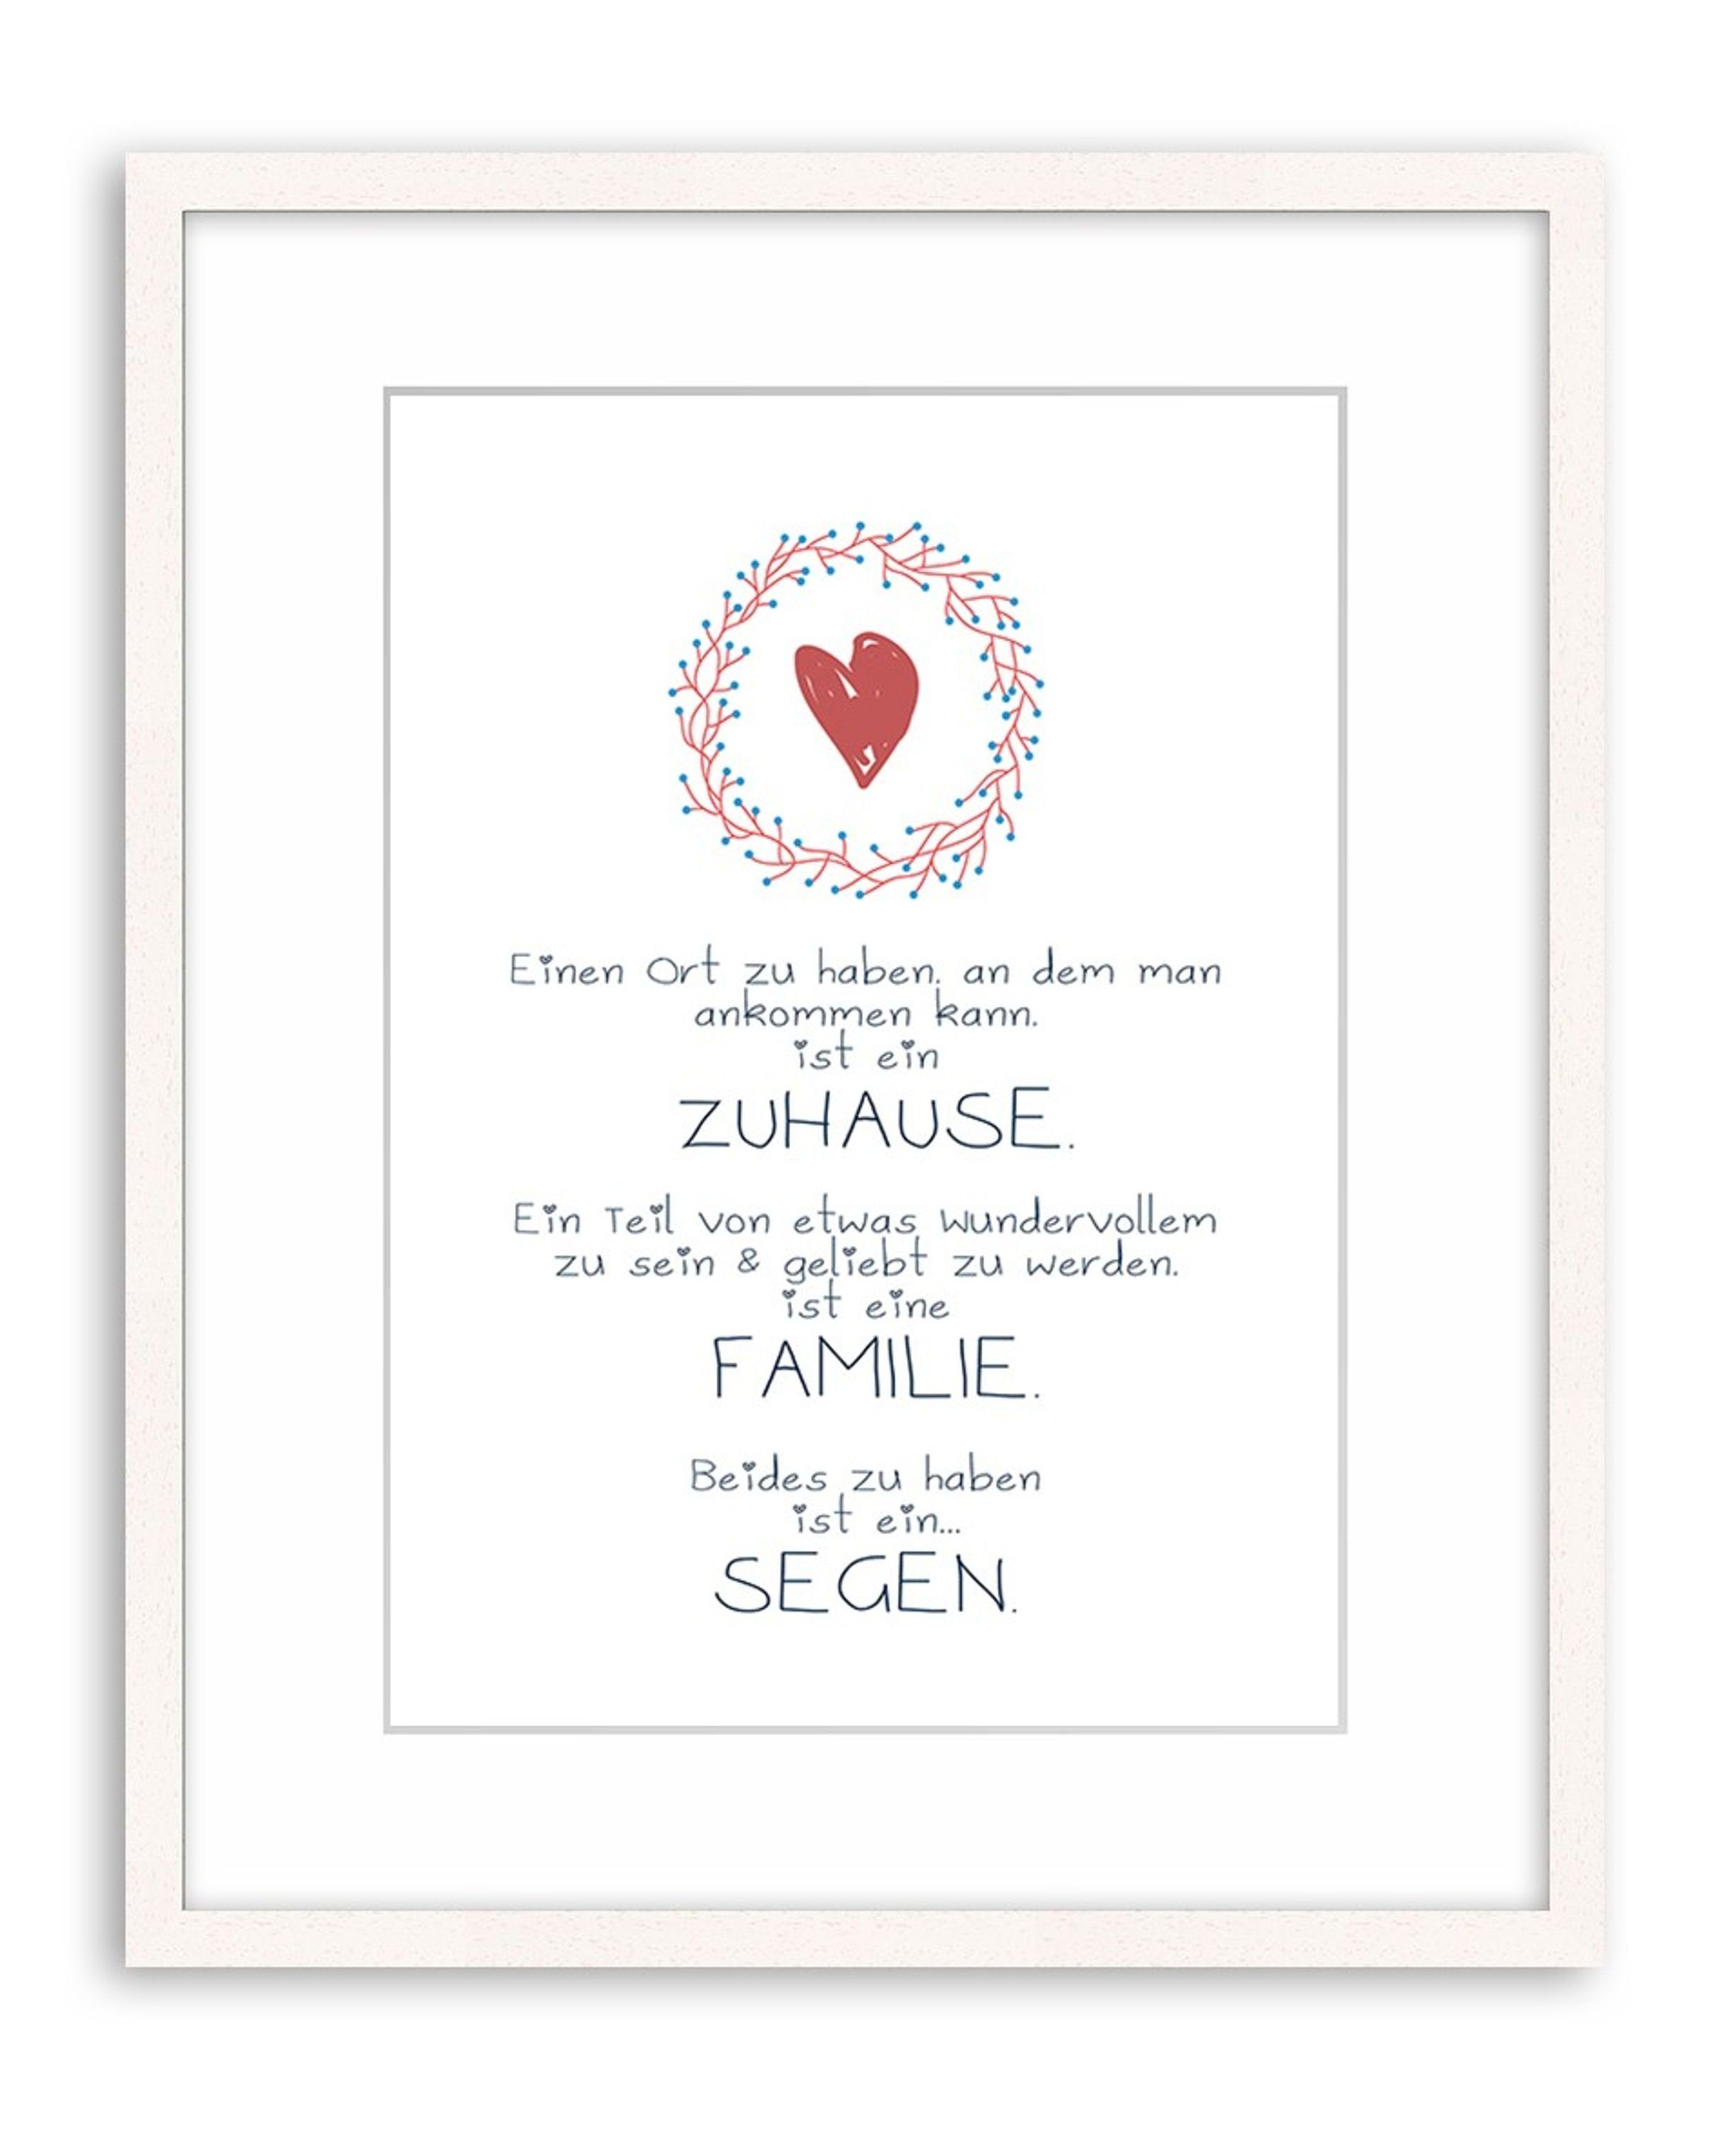 Familie Segen Zuhause mit artissimo und Sprüche: Herz, Spruch Zitate DinA4 Poster / Familie Zuhause / Wandbild Poster Sprüche Bild